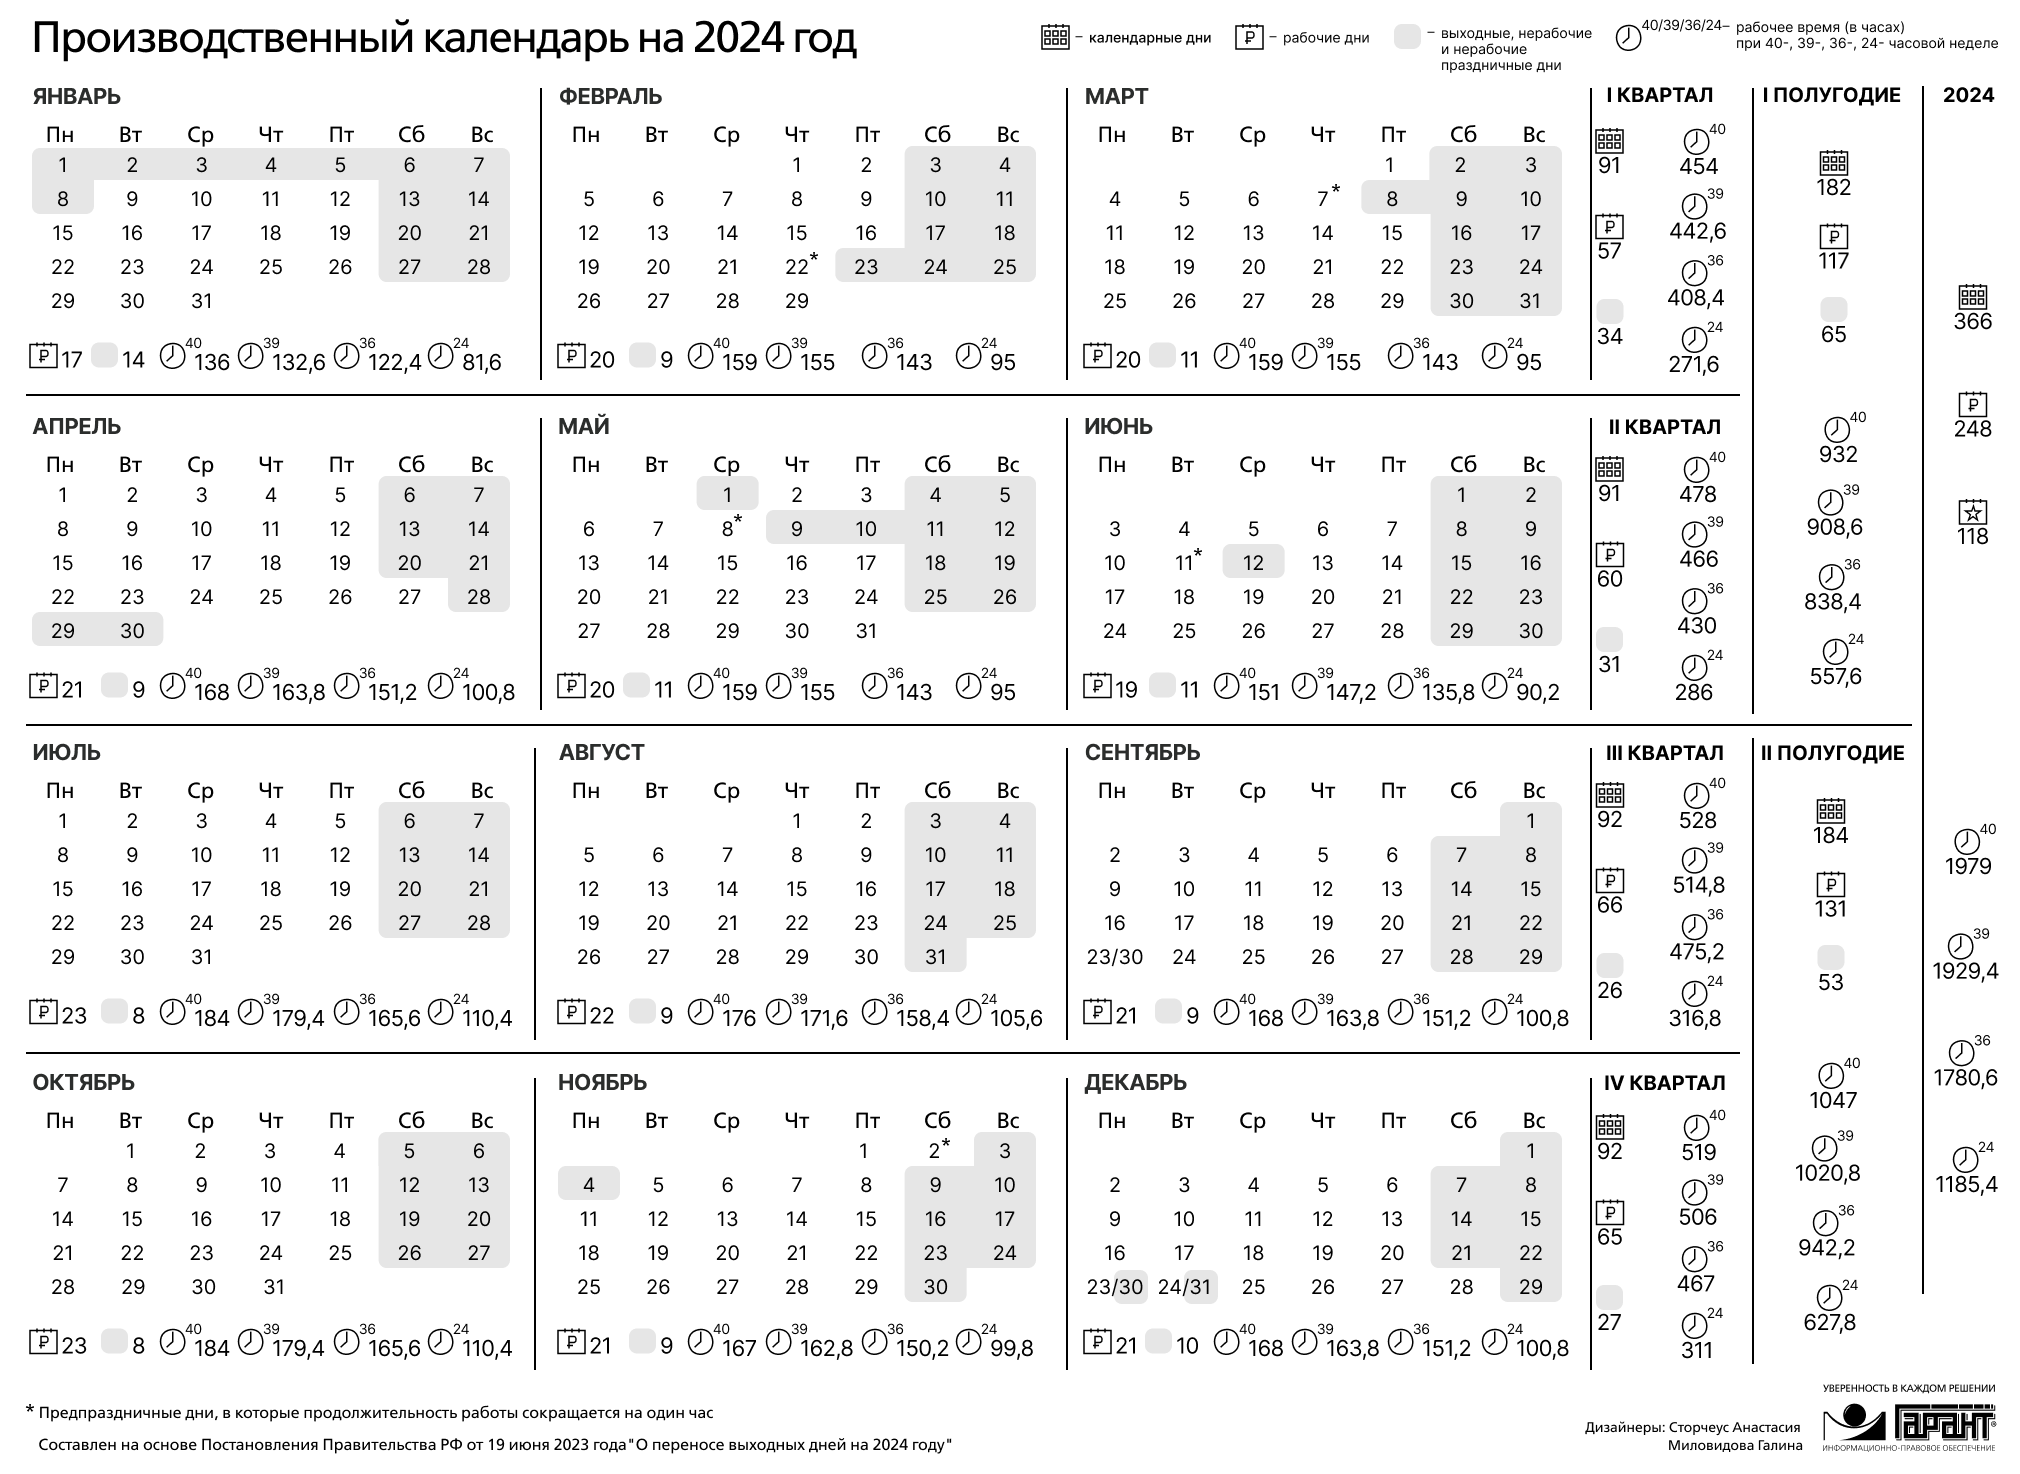 Календарь праздников рабочих дней на 2024 год. Праздничные дни 2024 года в России производственный календарь. Календарь на 2024 год с праздниками и выходными производственный РФ. Производственный календарь на 2024 го од. Зводственный календарь на 2024.